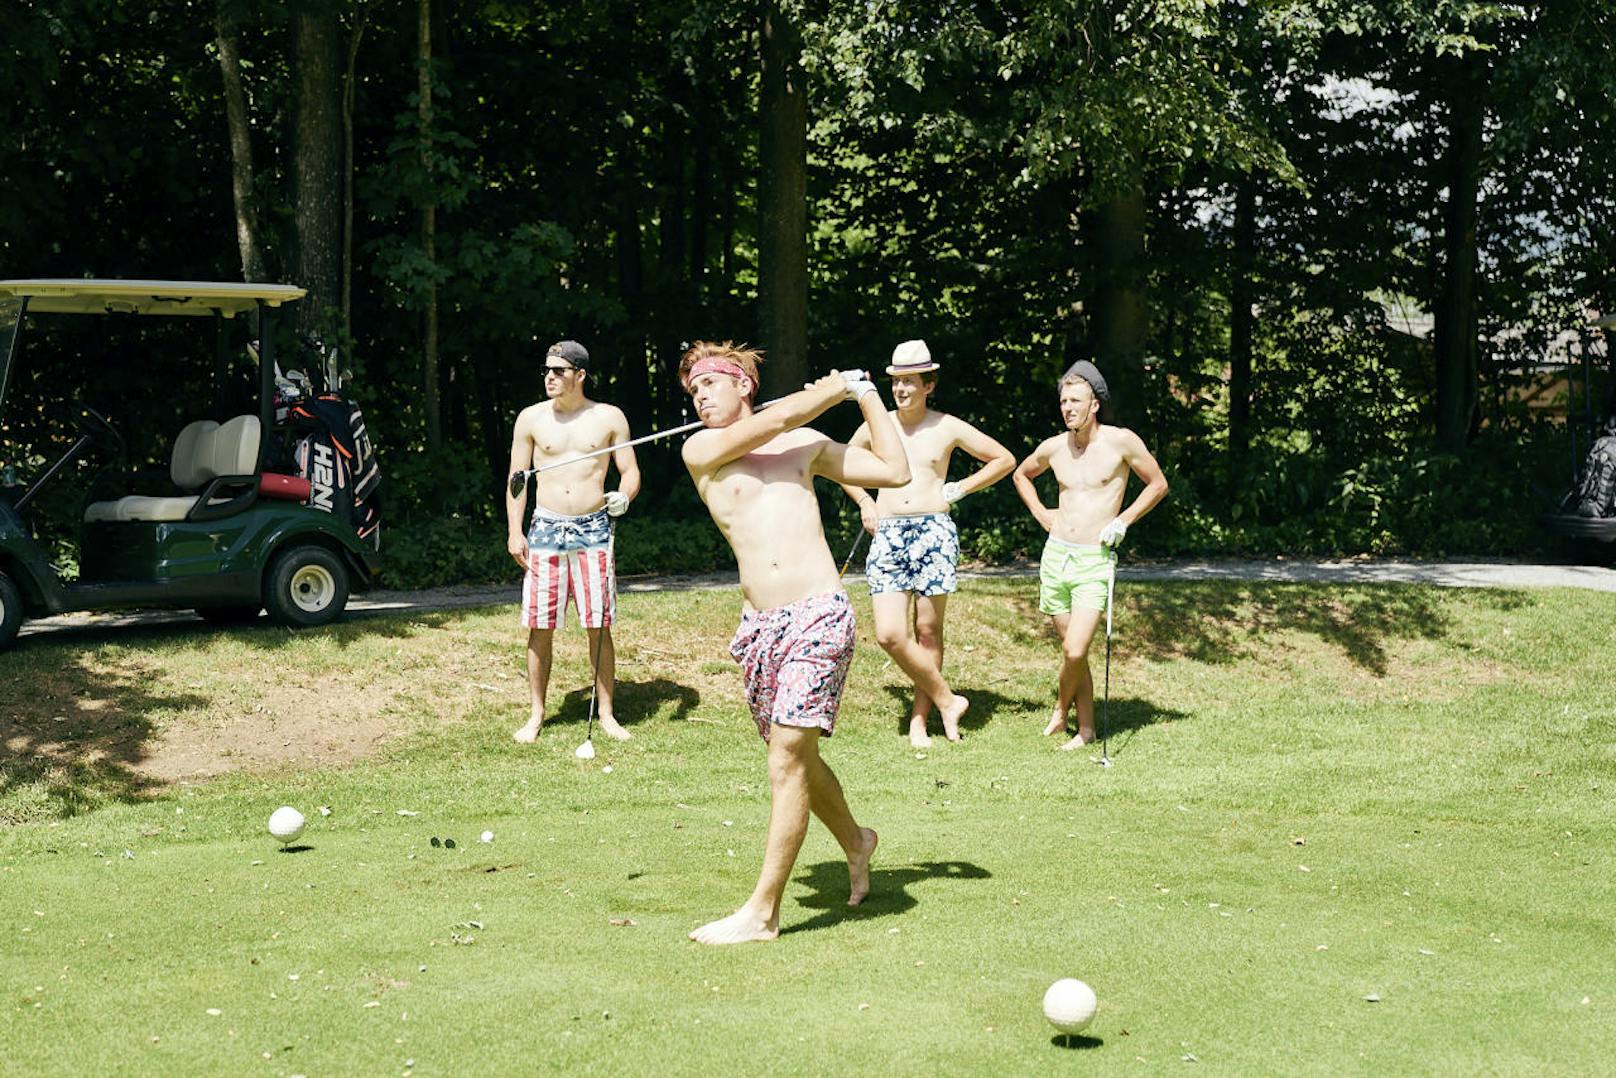 "Golf goes crazy": Luca Painsi, Oliver Rath, Gregor Taurer und Florian Biedermann landeten mit ihrer Oben-ohne-Golfrunde einen Socialmedia-Hit.